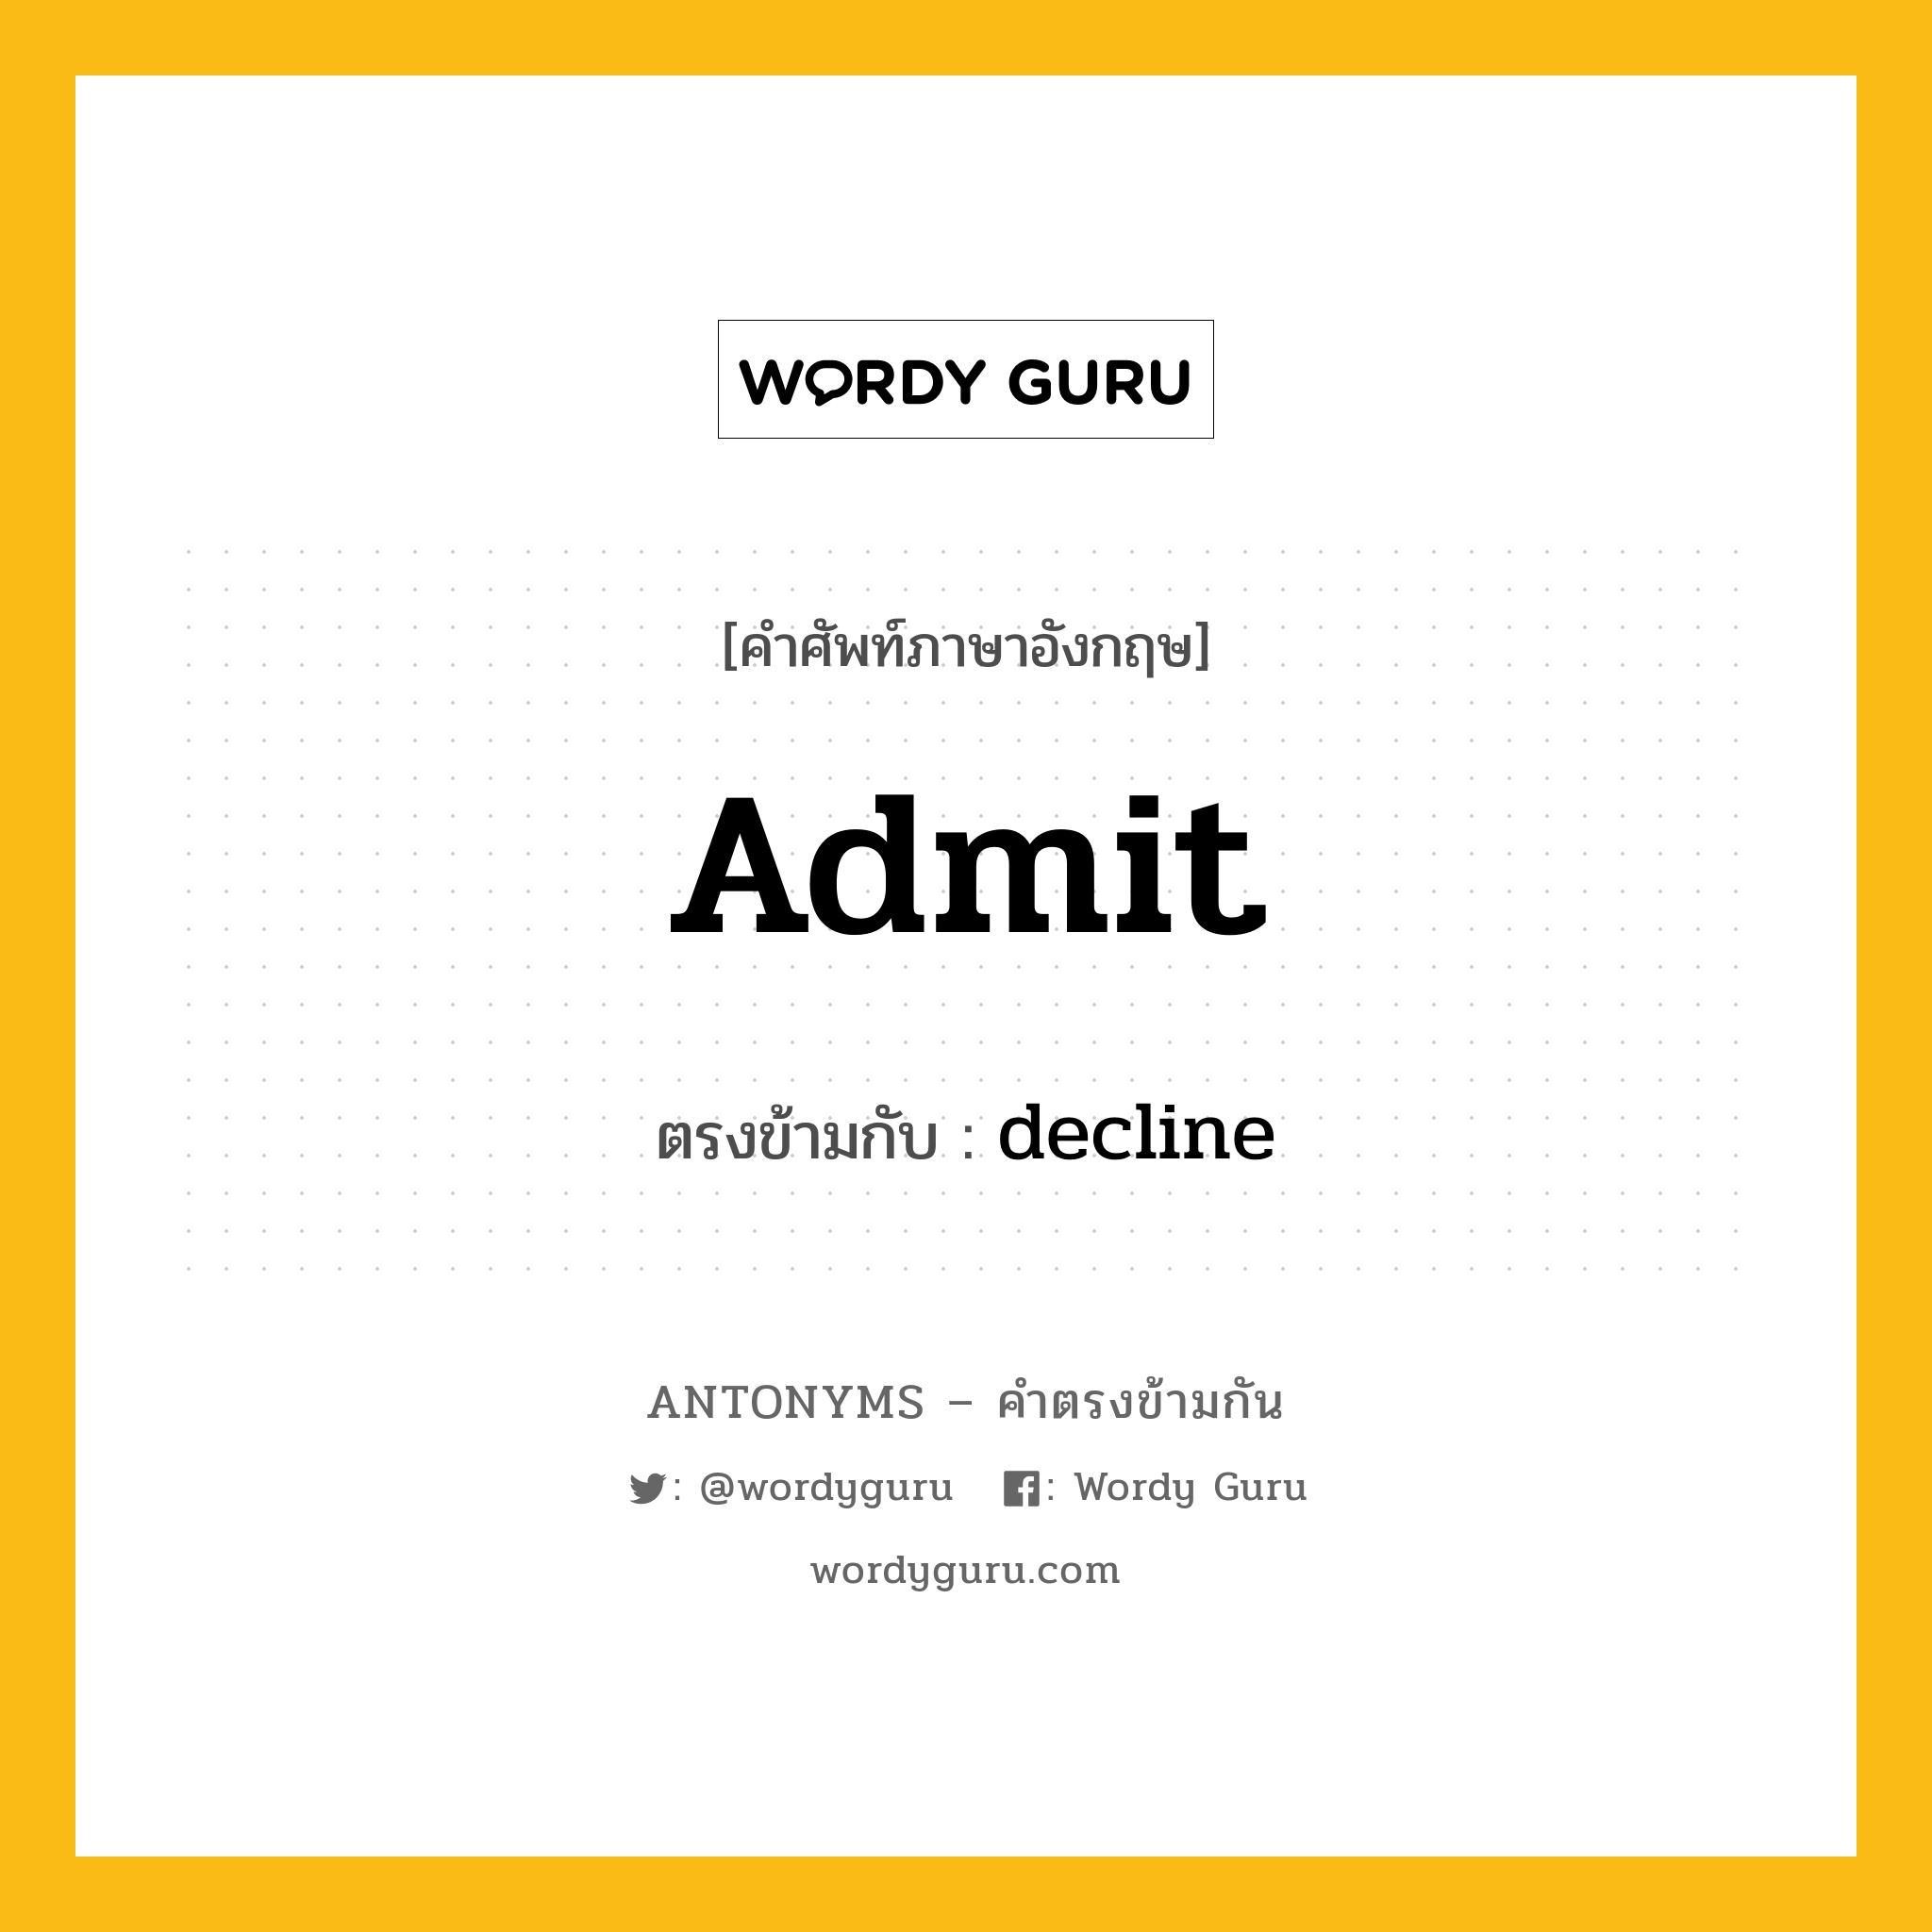 admit เป็นคำตรงข้ามกับคำไหนบ้าง?, คำศัพท์ภาษาอังกฤษ admit ตรงข้ามกับ decline หมวด decline